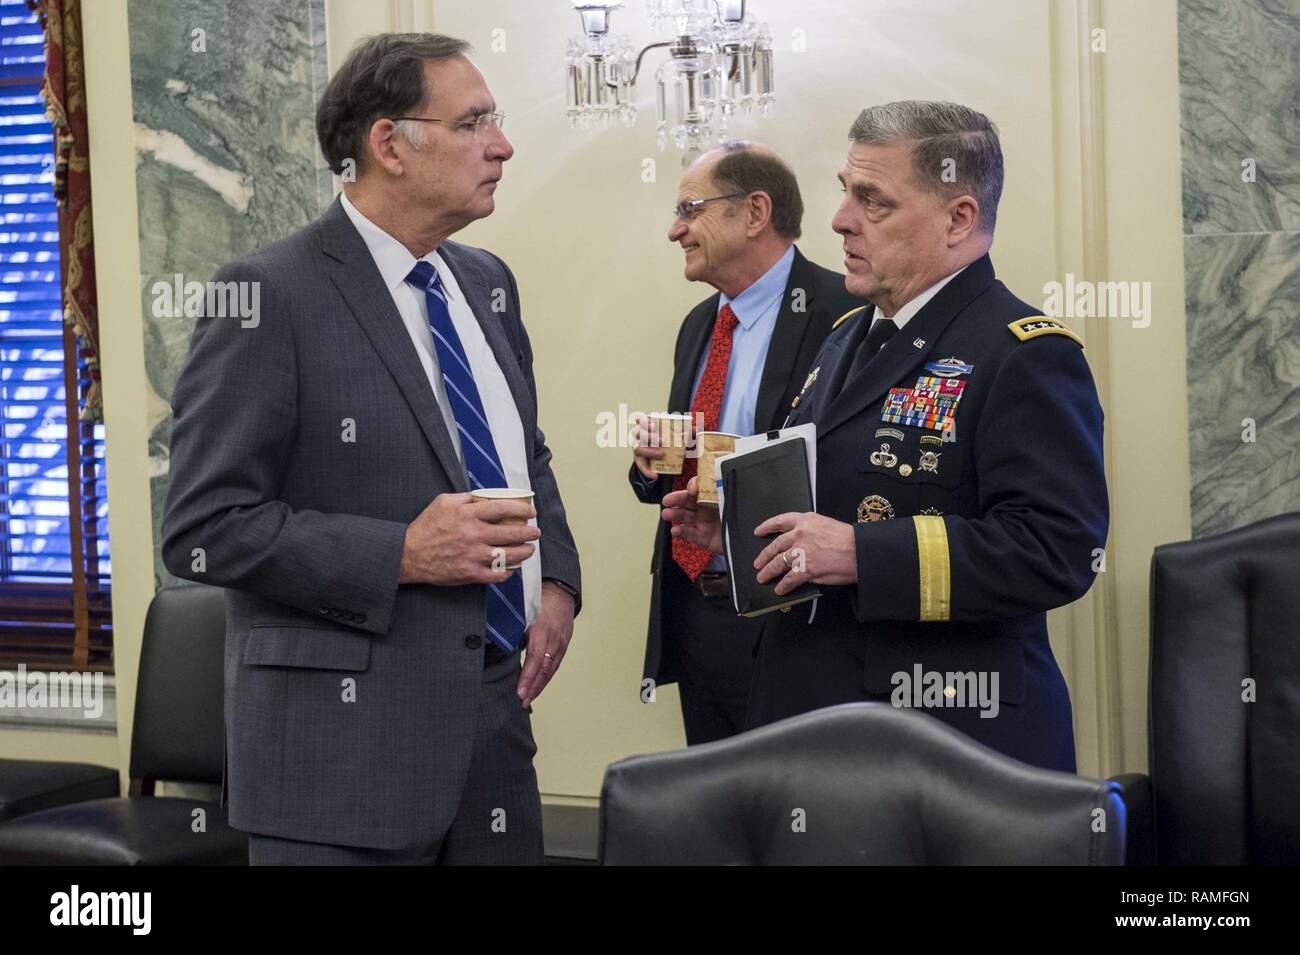 Us-Generalstabschef Gen. Mark A. Milley, Links, spricht mit den Senatoren John boozman nach einem Senat, Armee Roundtable Caucus Frühstück auf dem Capitol Hill, Washington D.C., 14.02.2017. Stockfoto